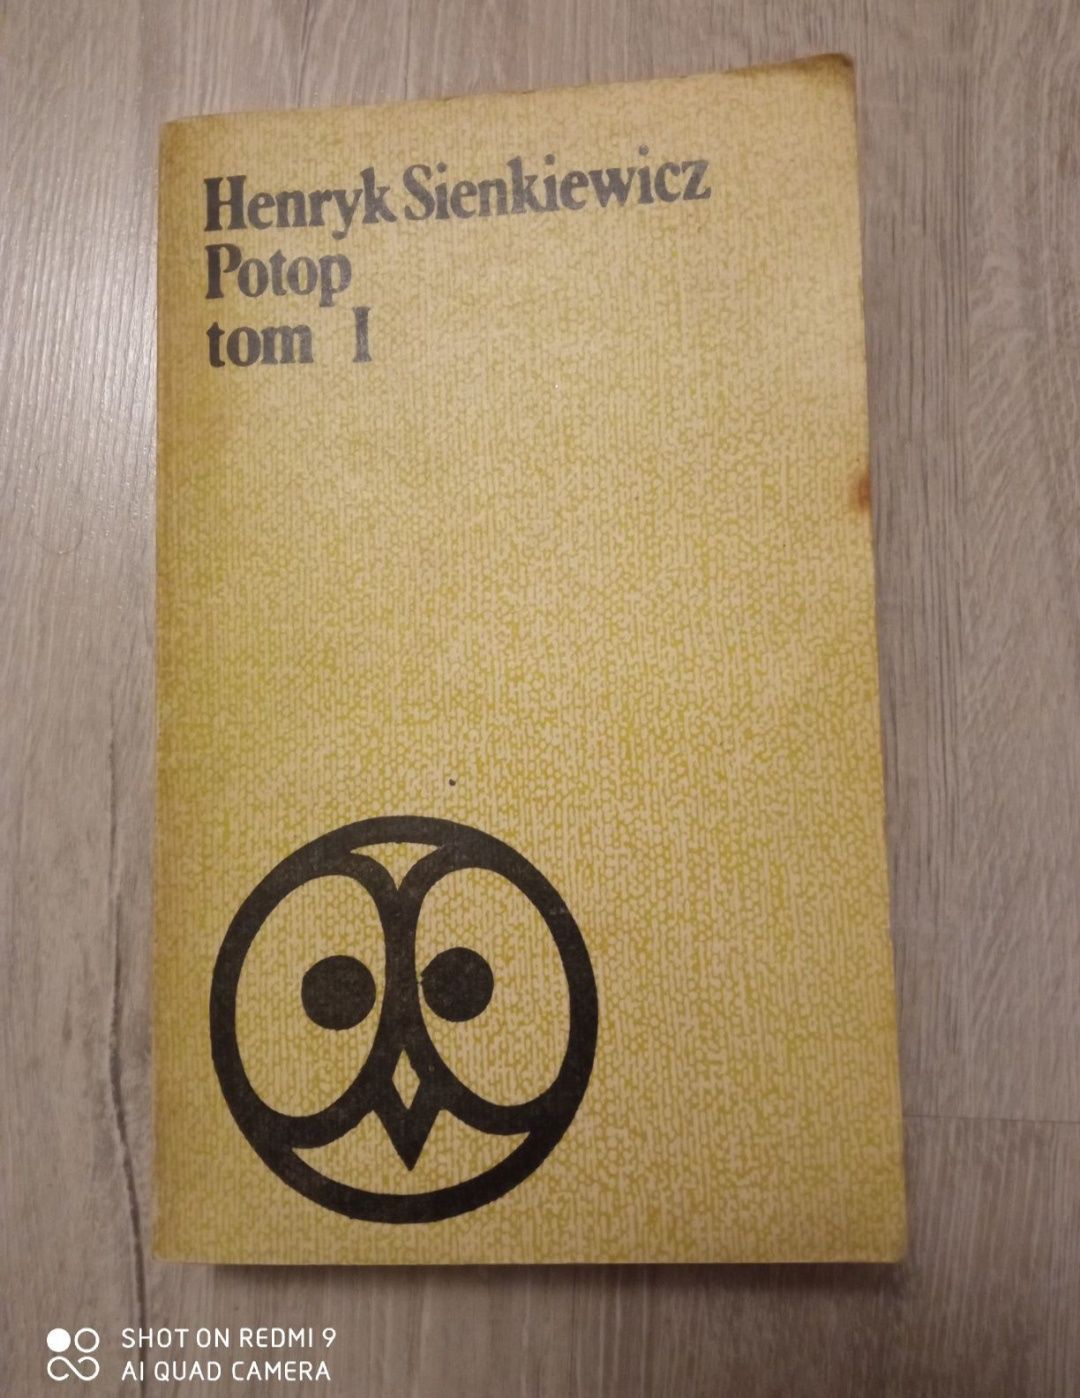 Potop. Tom I. Henryk Sienkiewicz